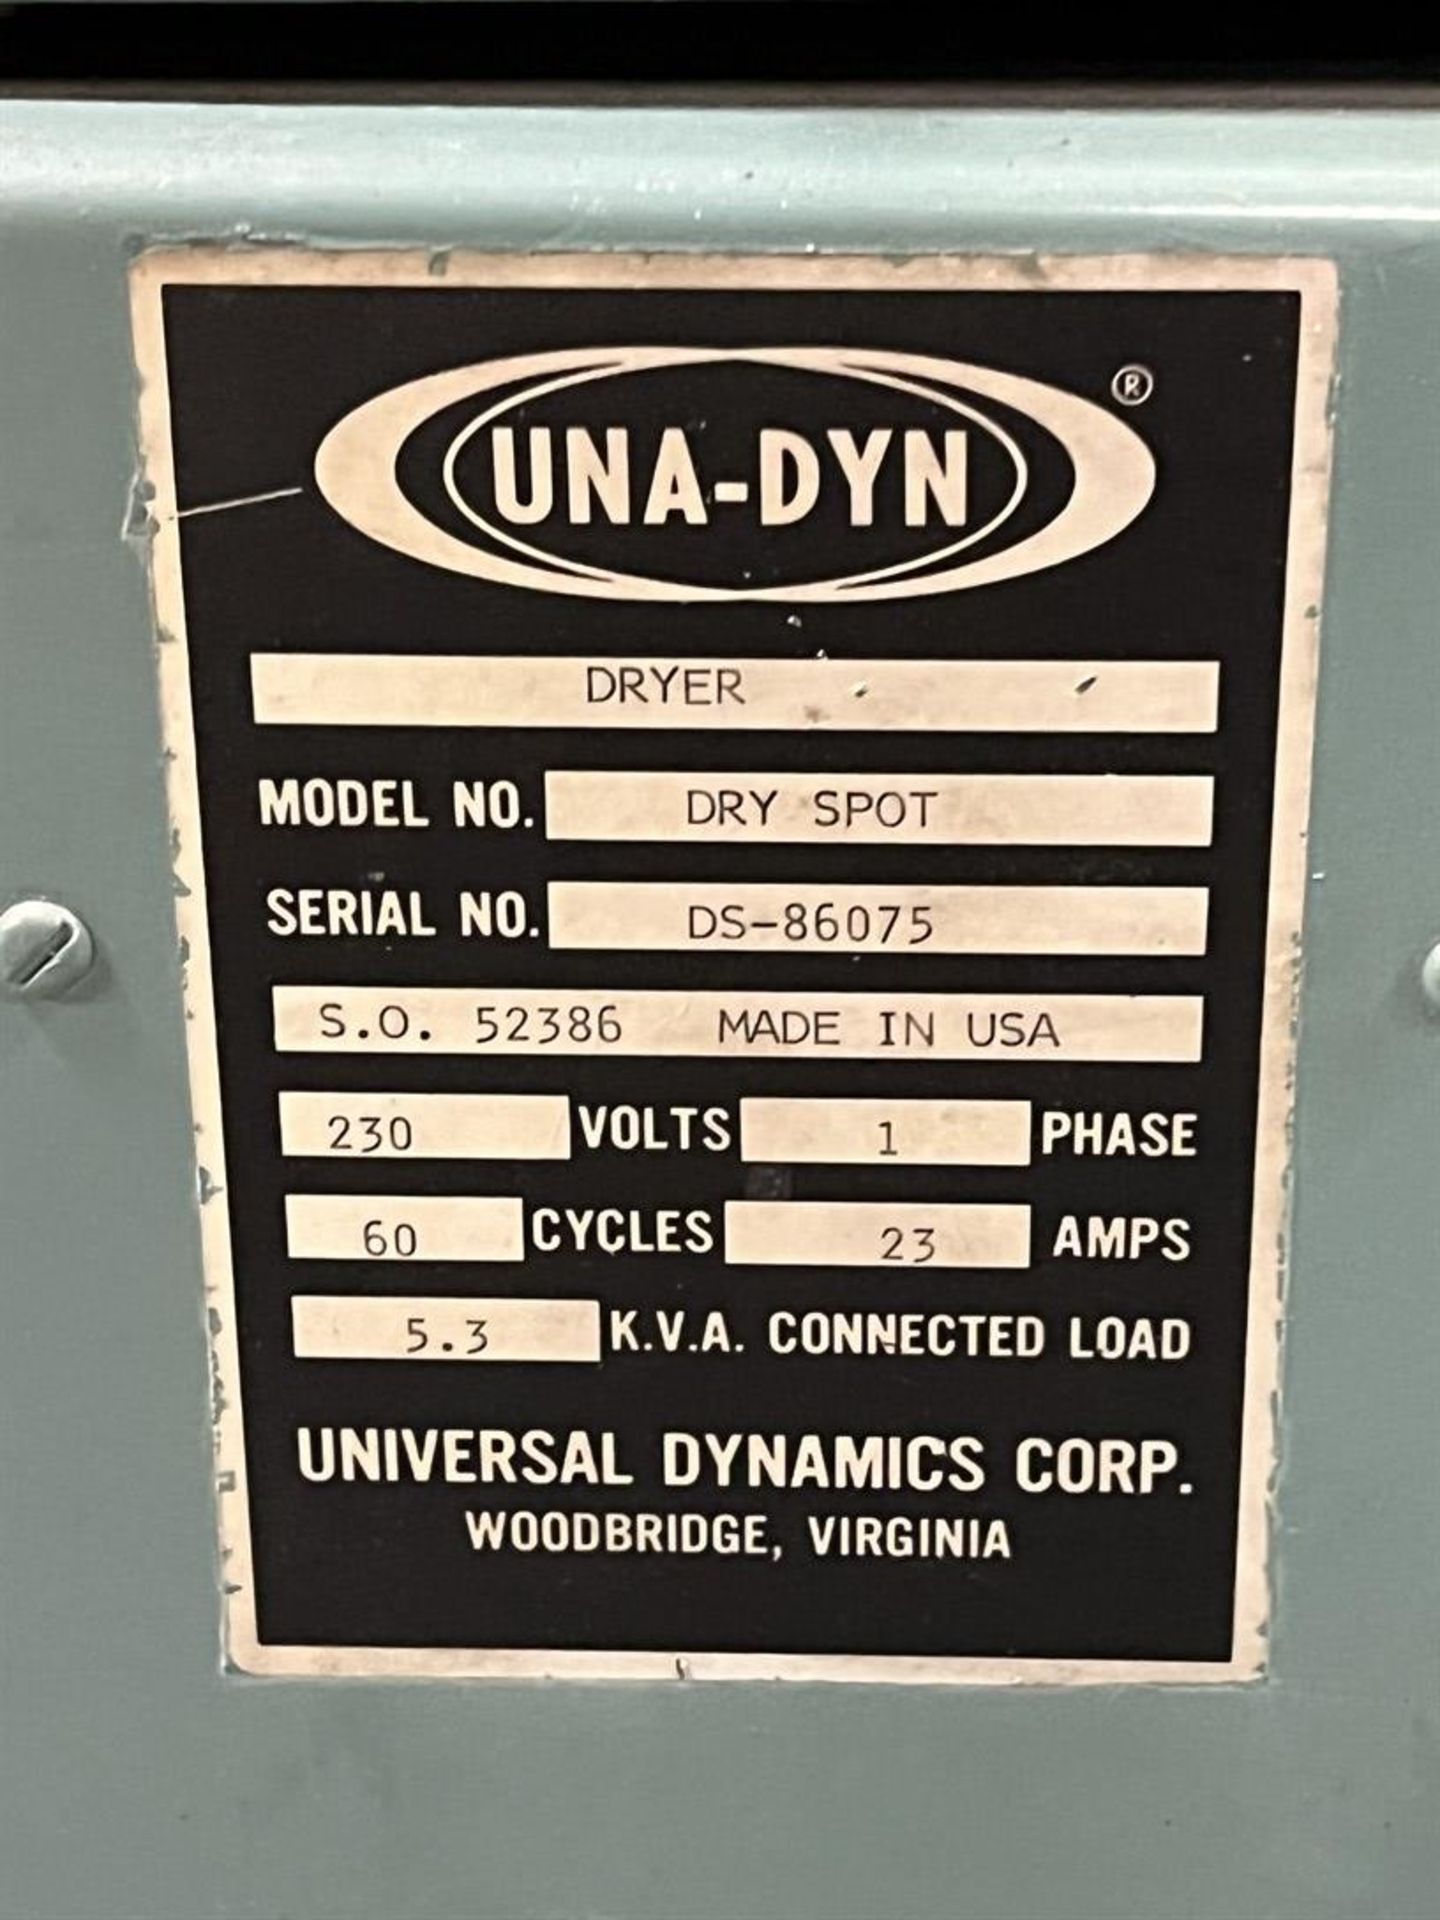 UNA-DYN Dry Spot Hopper Dryer, s/n DS-86075 - Image 5 of 5